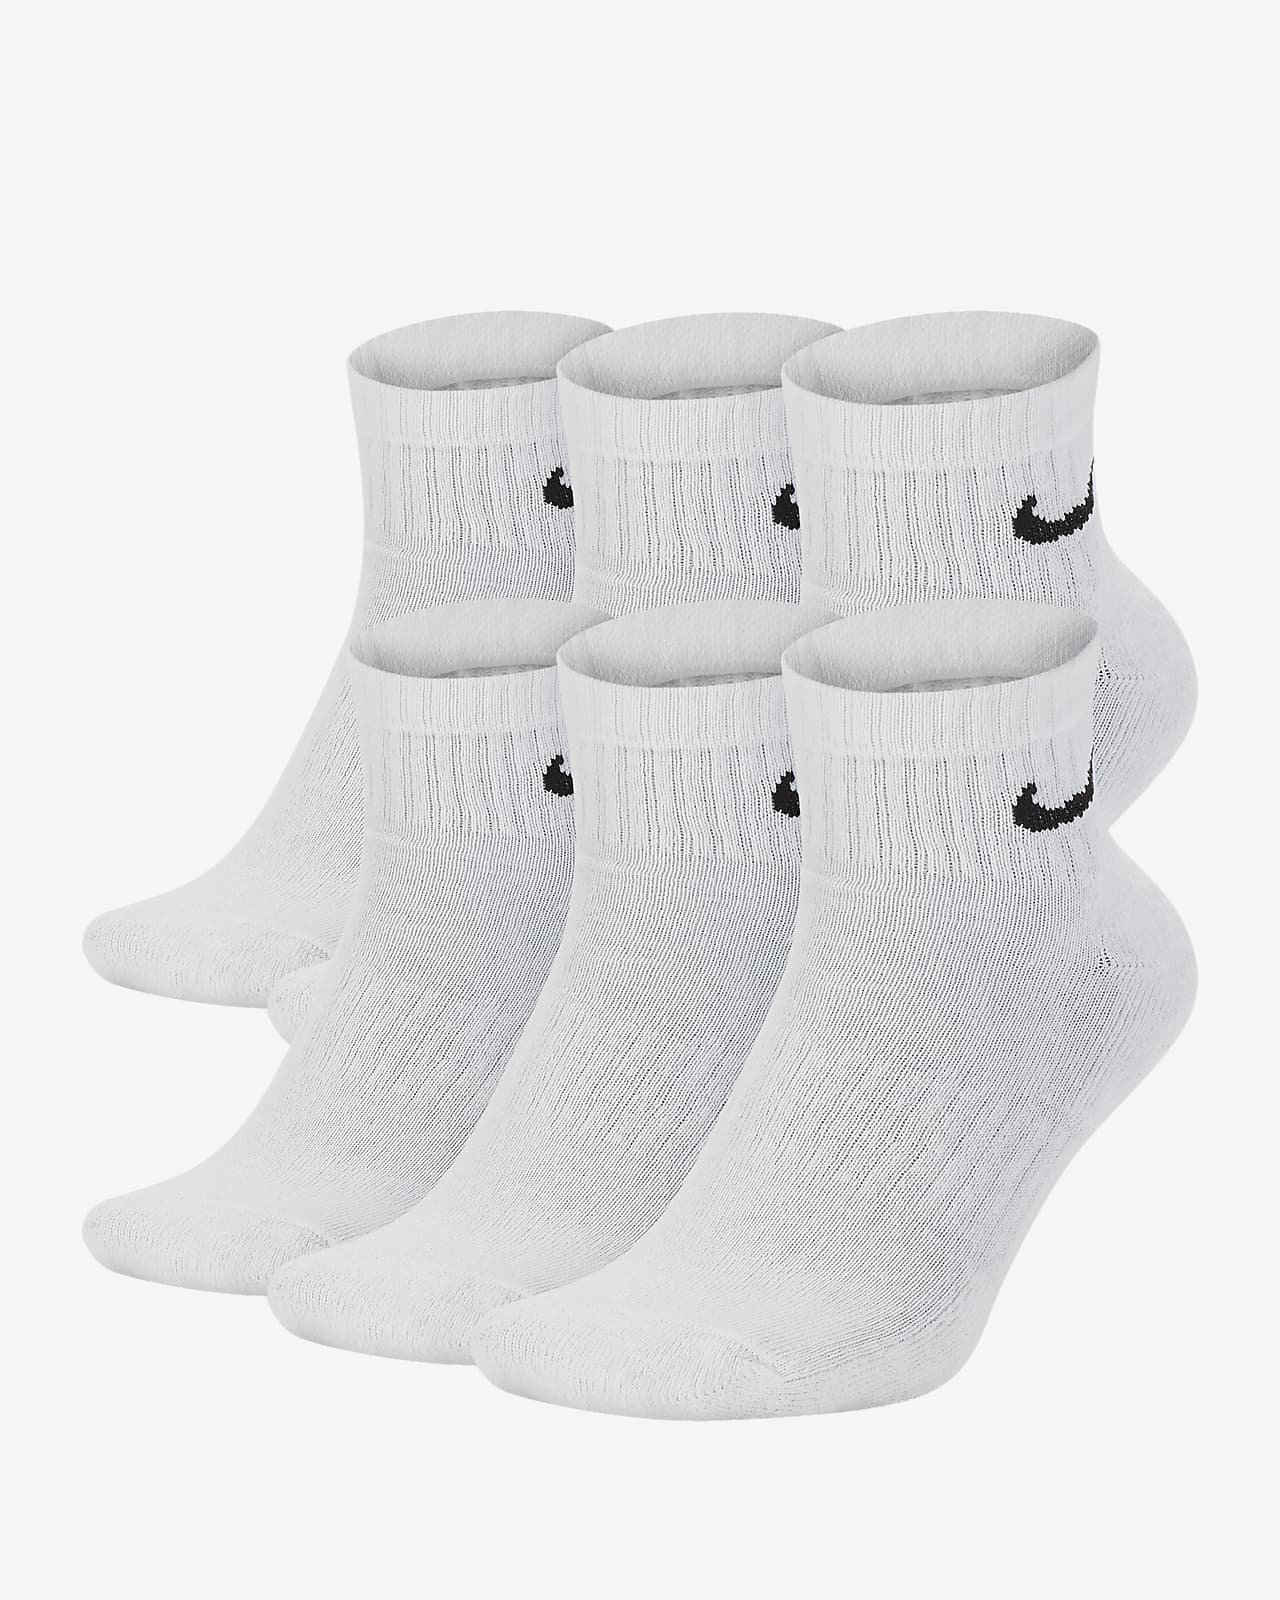 ถุงเท้าเทรนนิ่งหุ้มข้อ Nike Everyday Cushioned (6 คู่)